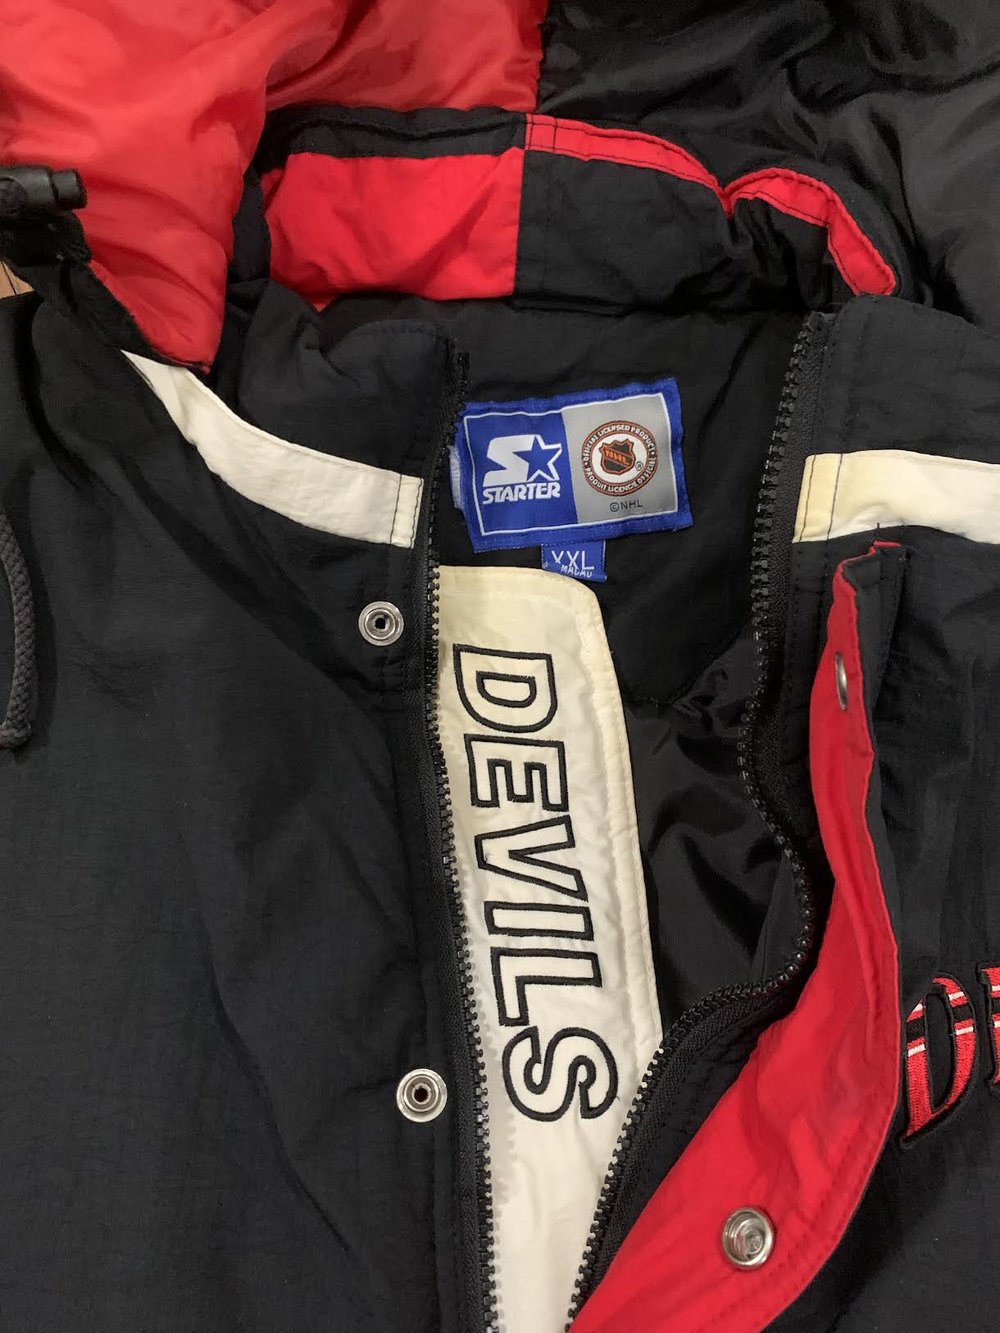 Vintage NJ Devils winter jacket